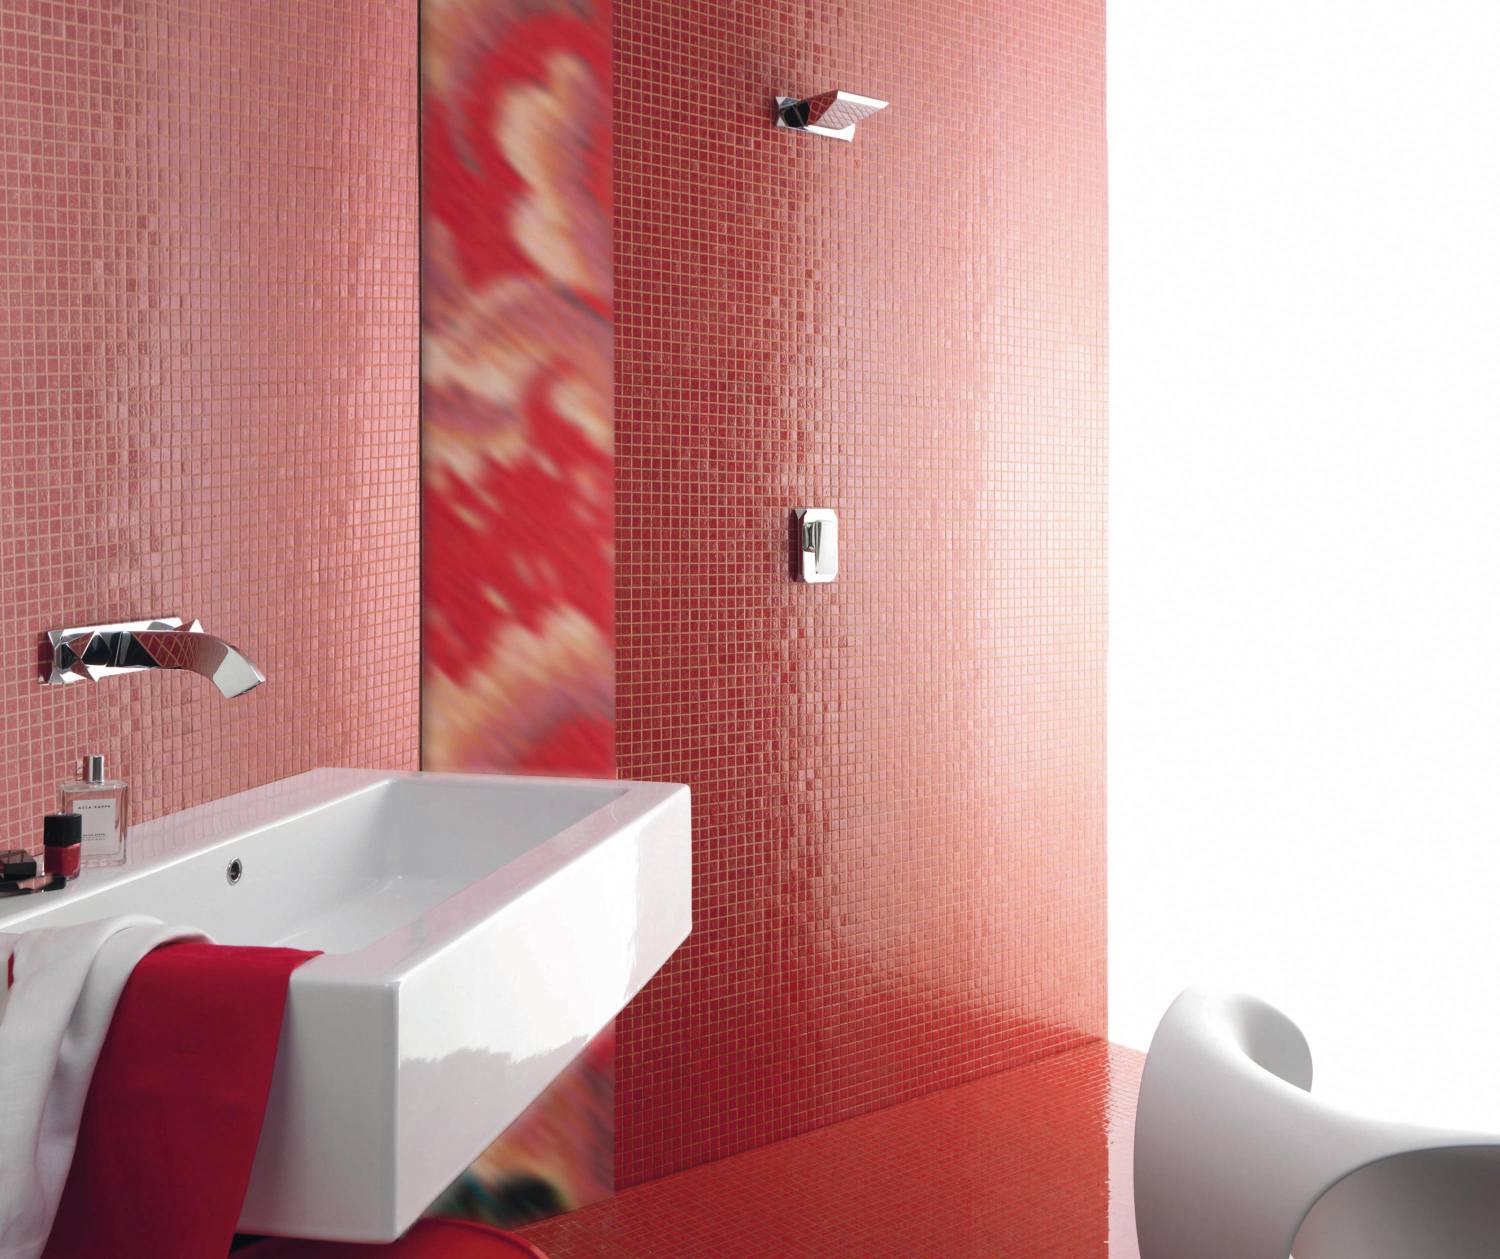 czerwona mozaika w łazience, czerwona mozaika nad umywalką, czerwona mozaika przy umywalce